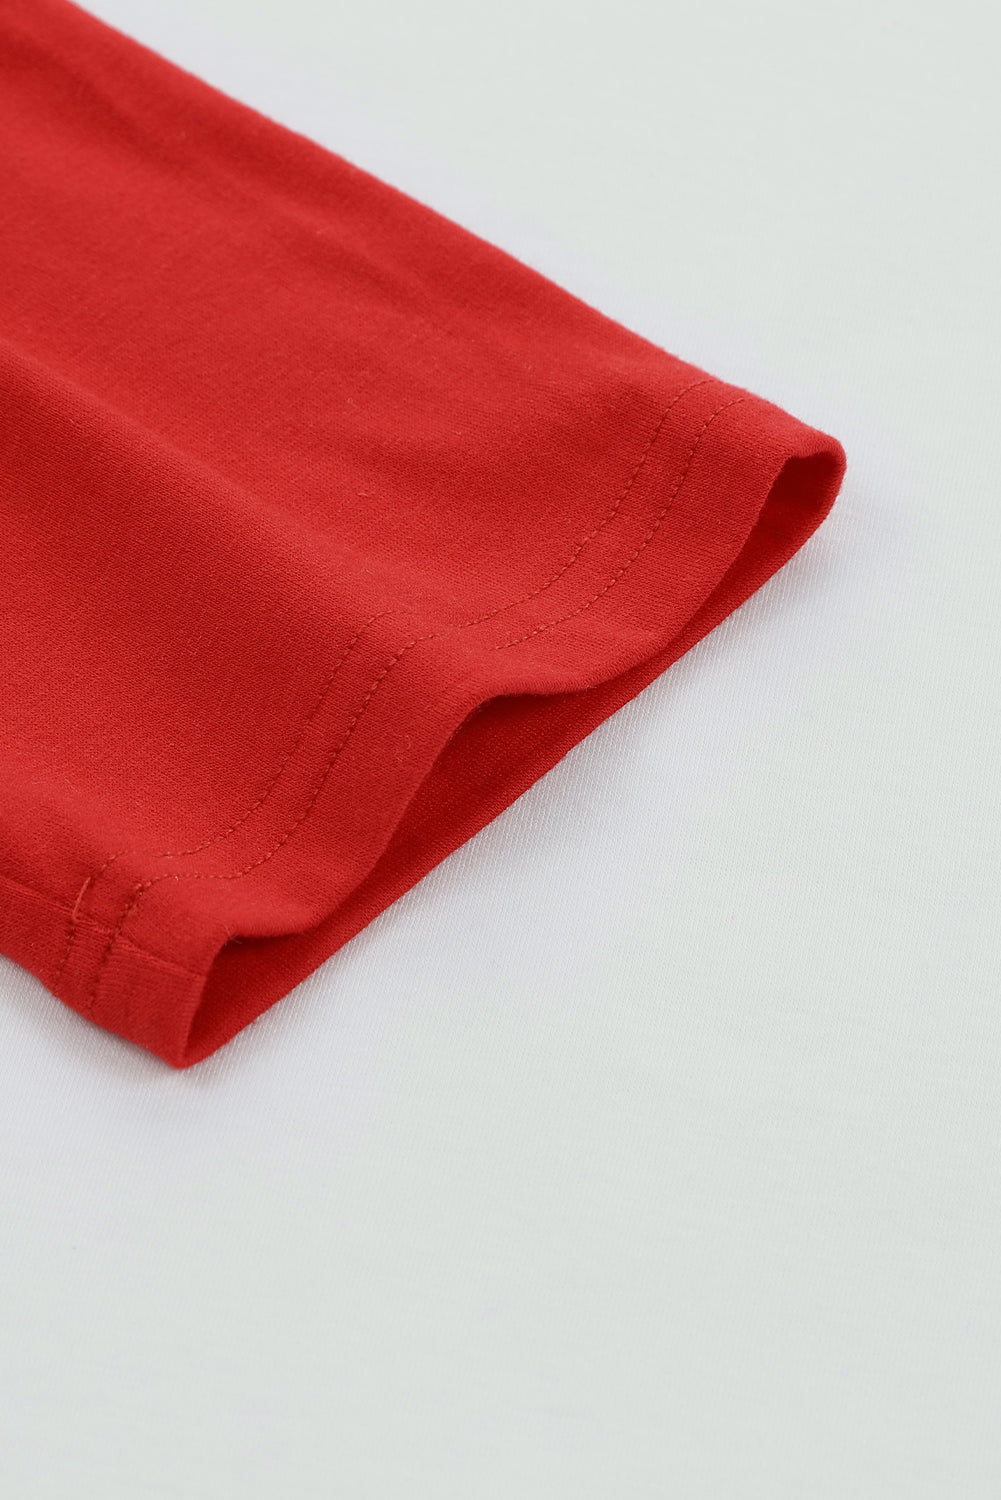 Vrhnji pulover z raglan rokavi v ognjeno rdeči barvi